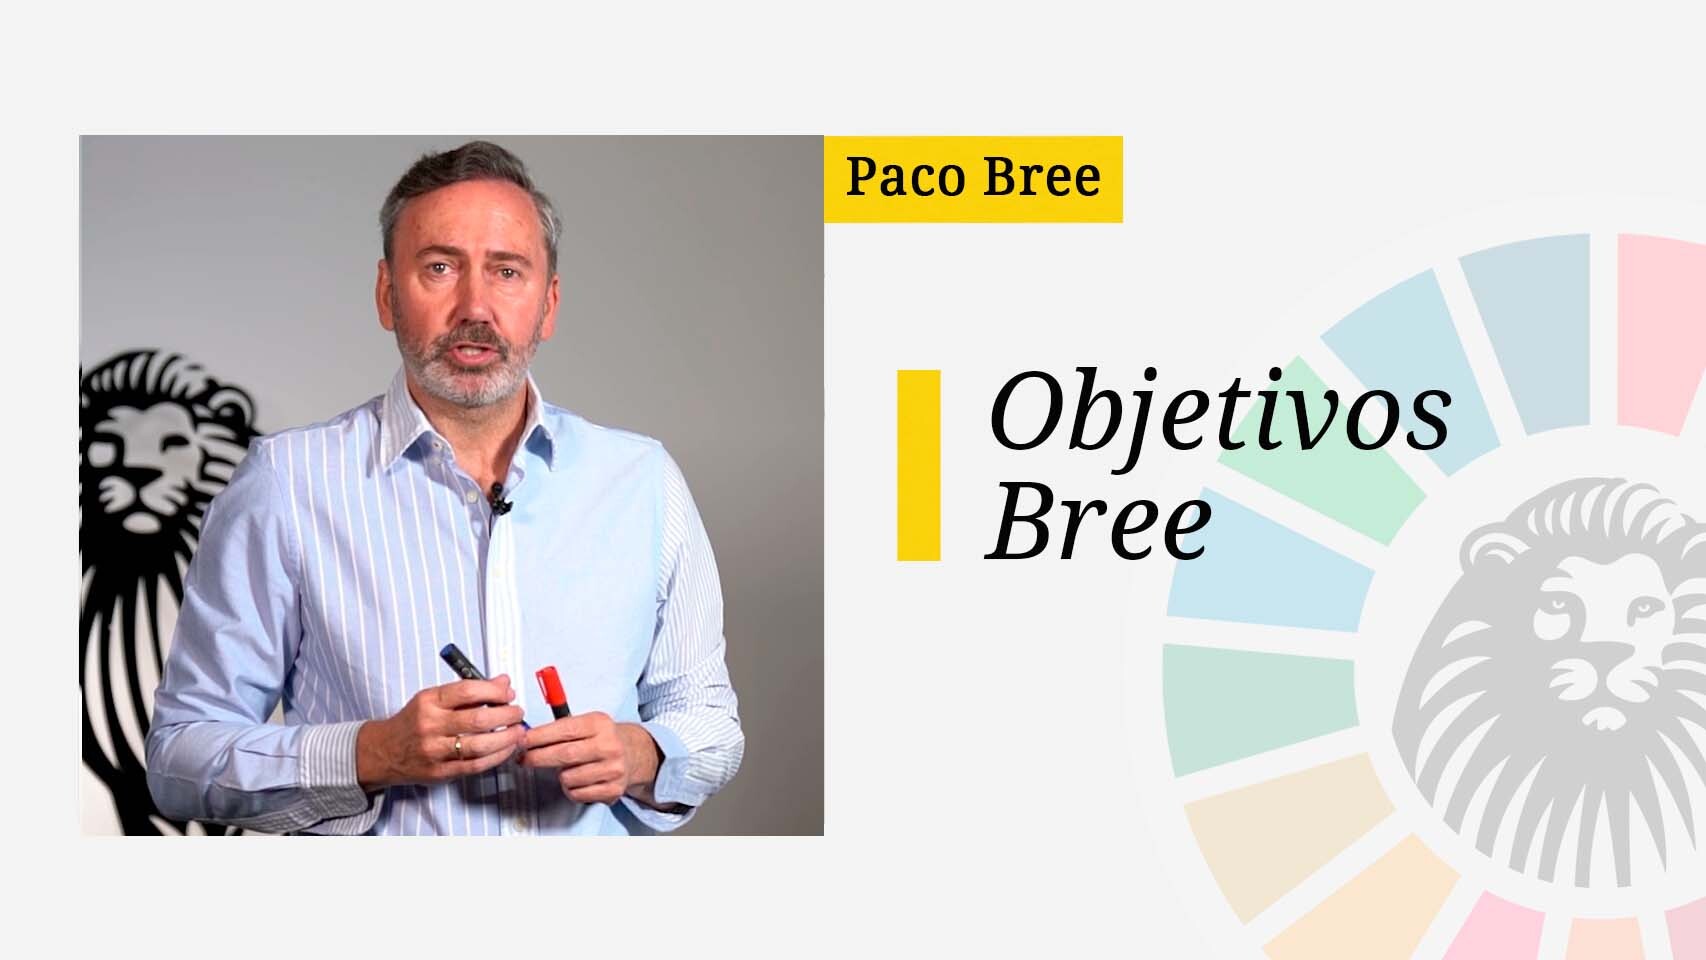 El profesor y experto en innovación Paco Bree acerca al lector a conceptos básicos de la sostenibilidad